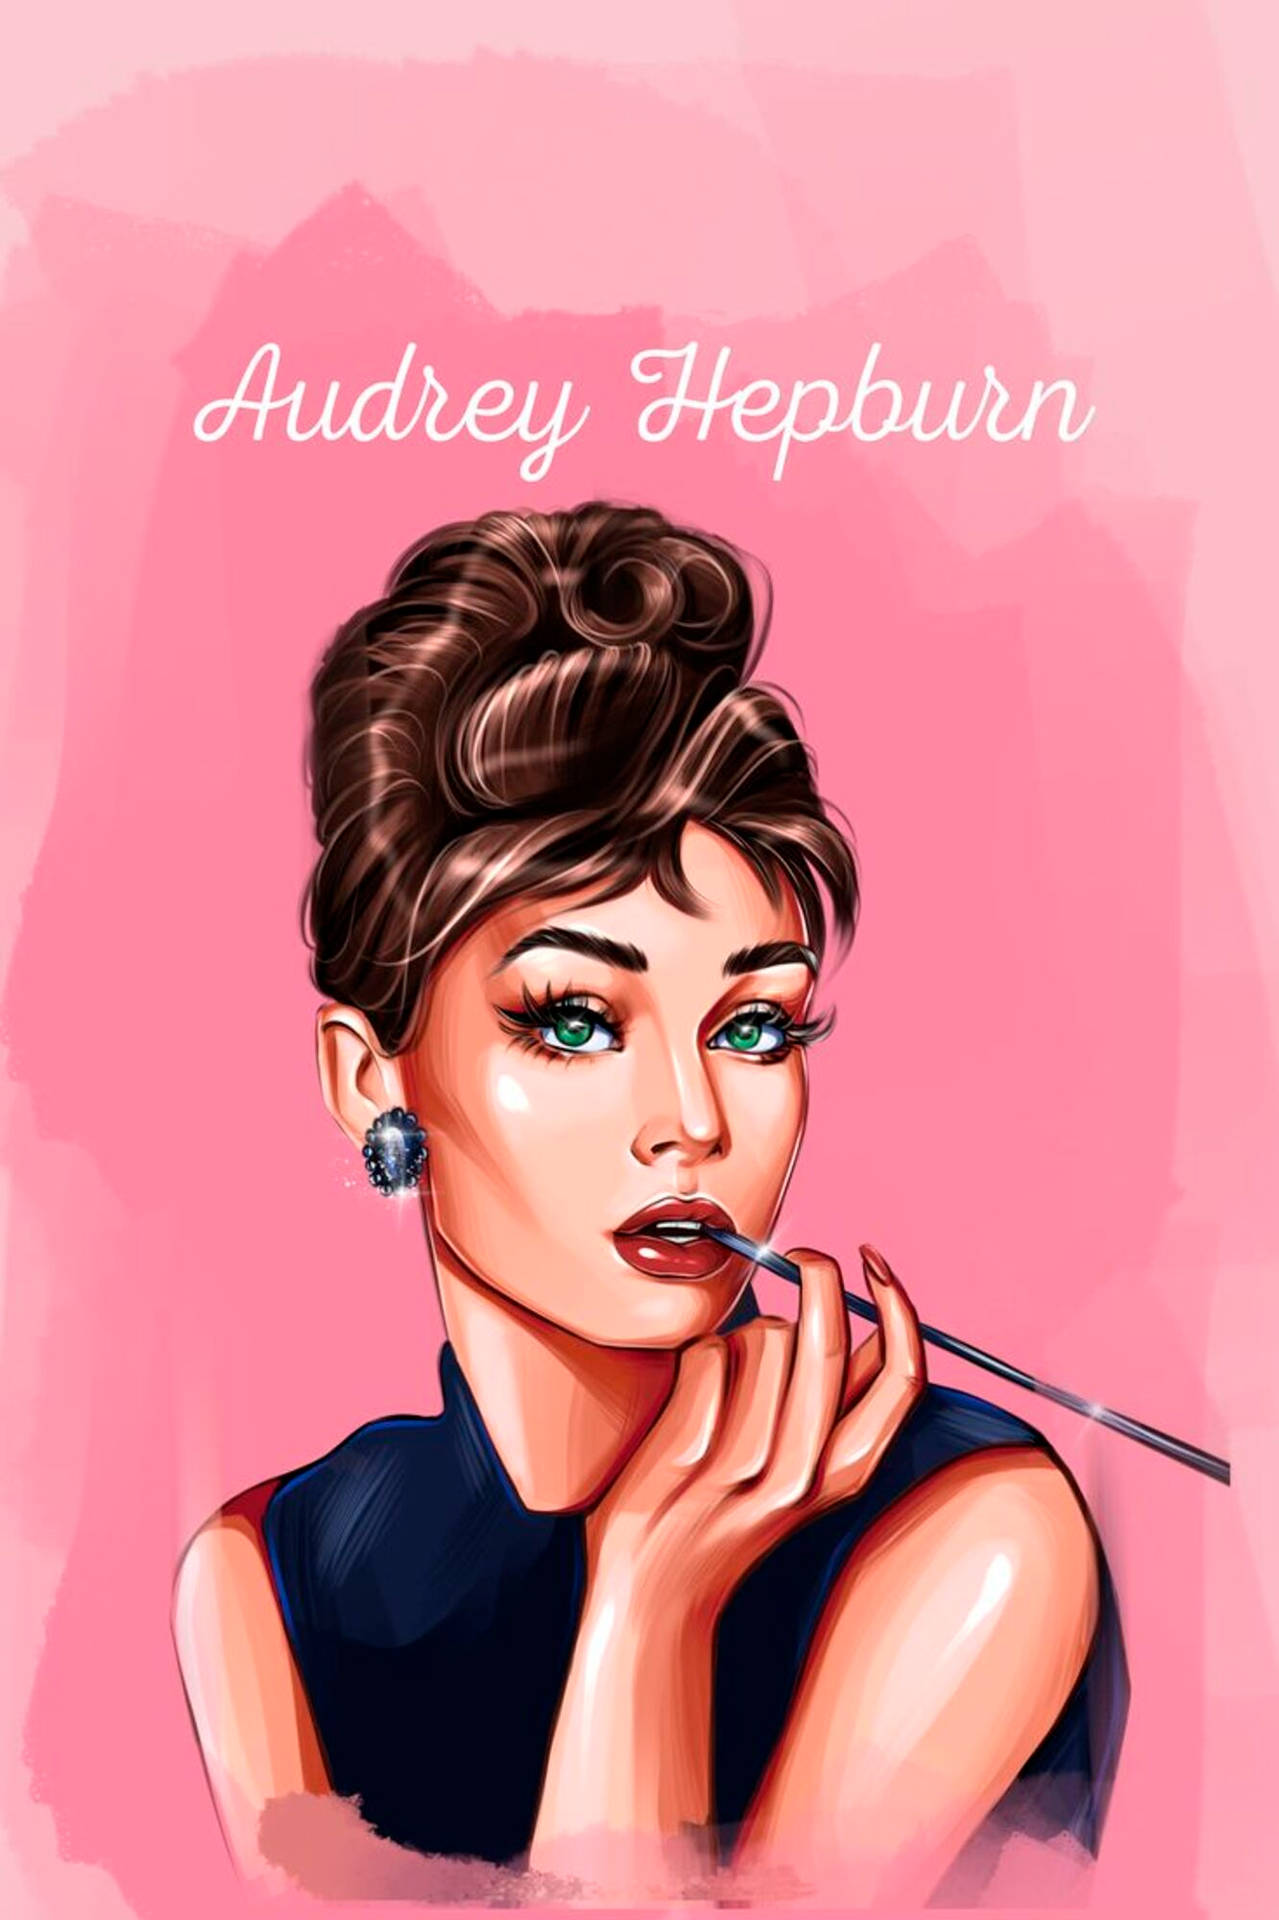 Audrey Hepburn Wallpaper Images